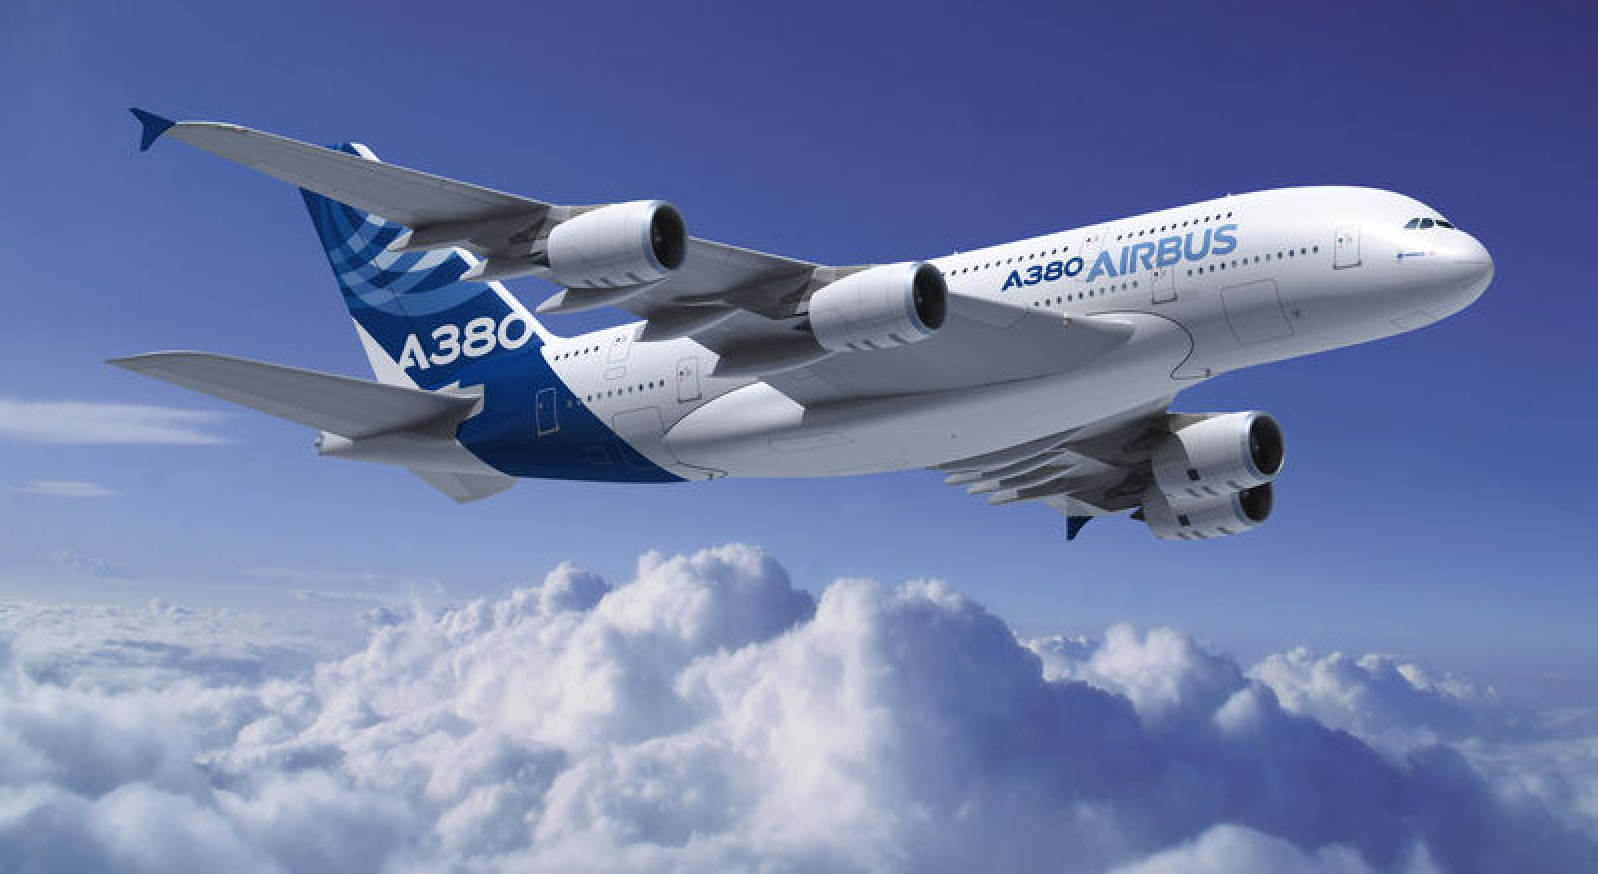 AirbusA380